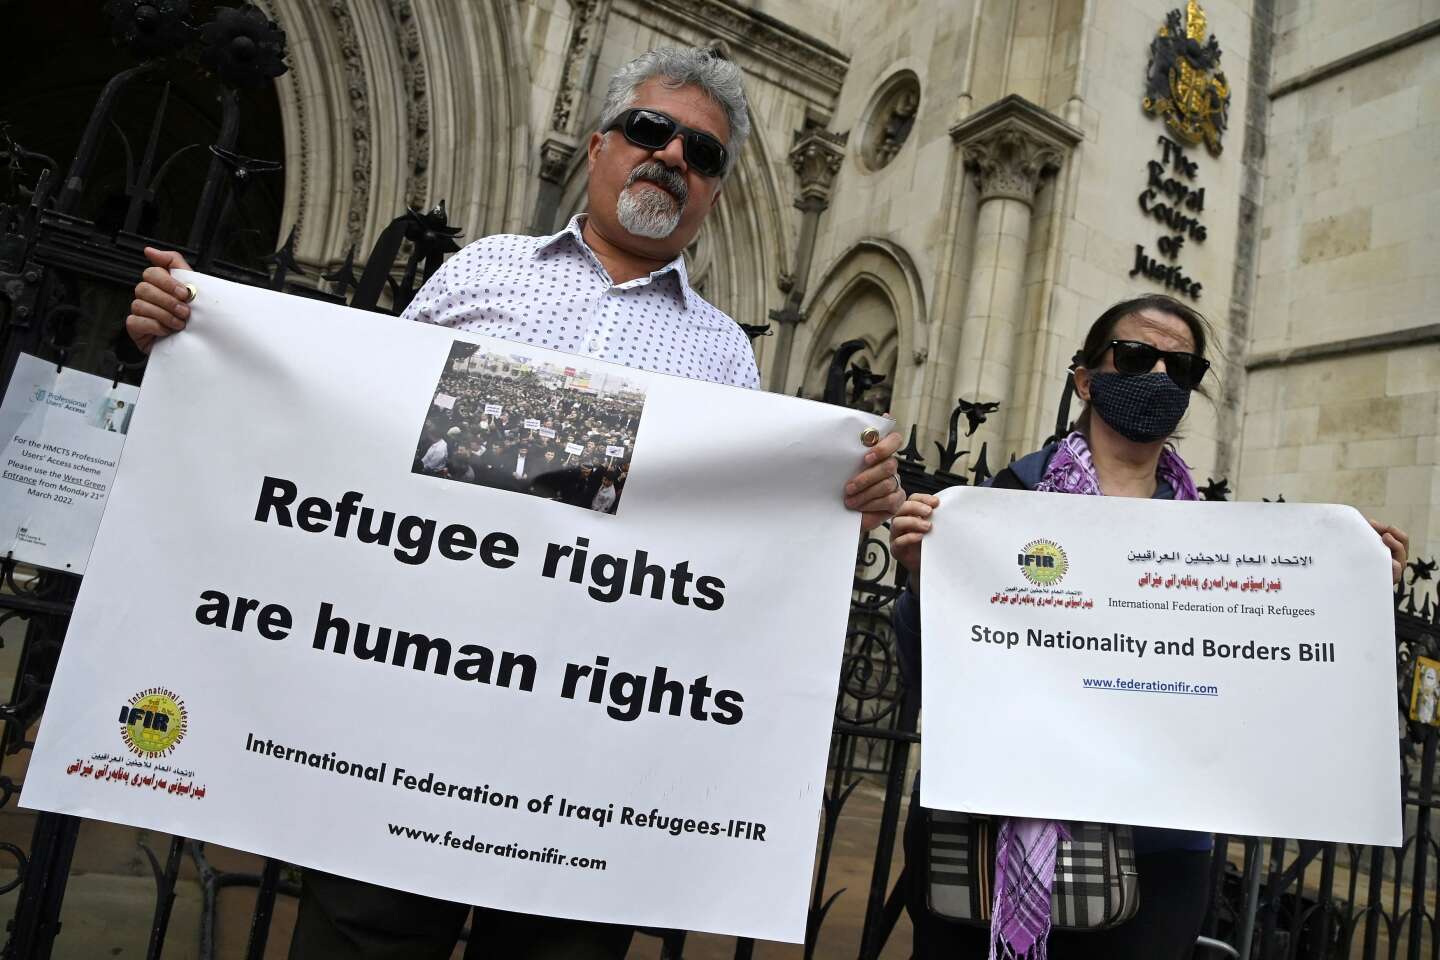 Britse rechtbank machtigt deportatie van asielzoekers naar Rwanda